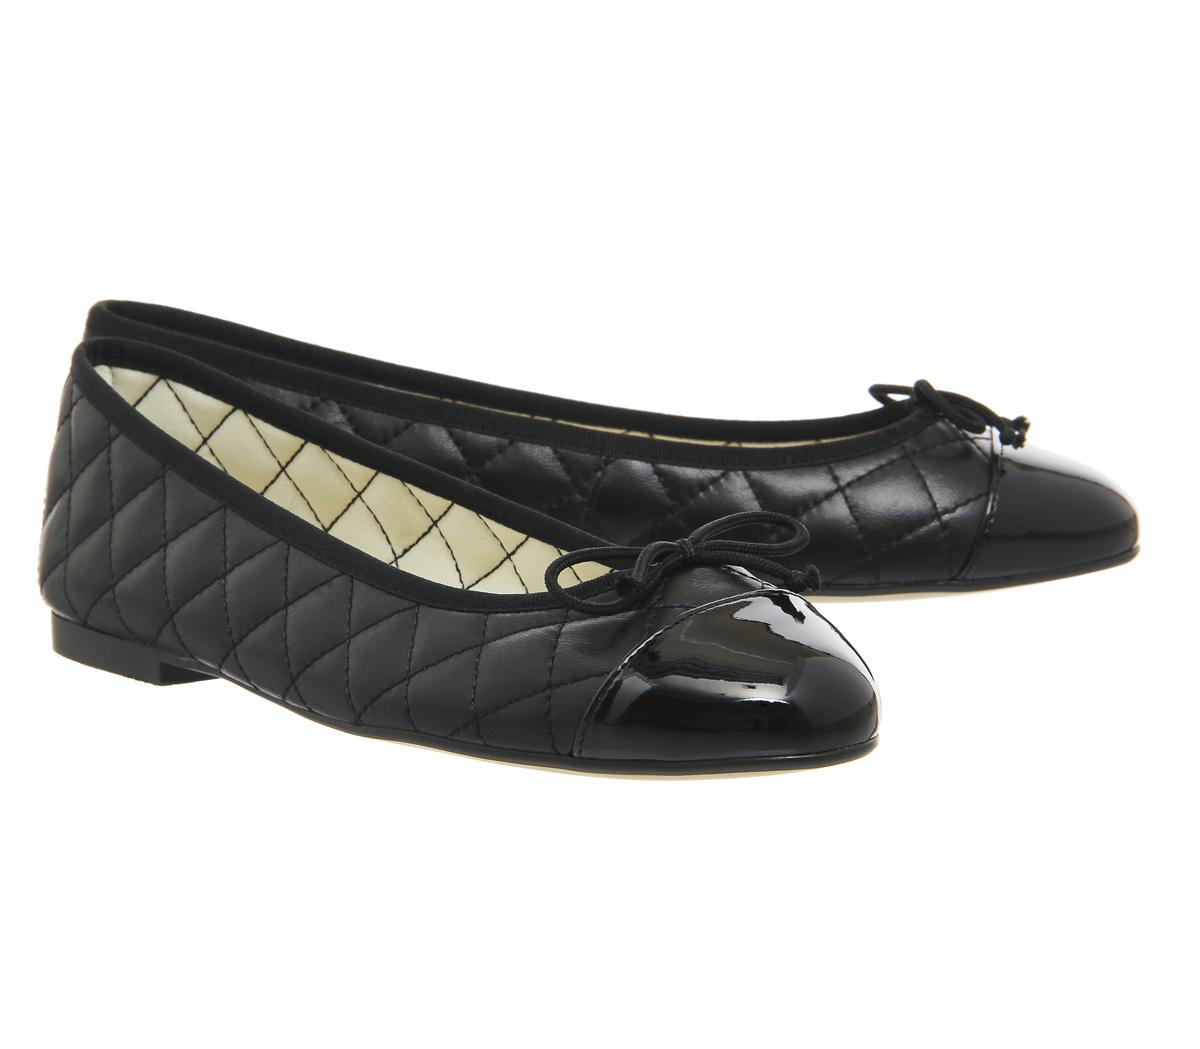 OFFICE Cecilia Toe Cap Ballet Pumps Black Leather Patent - Flat Shoes ...